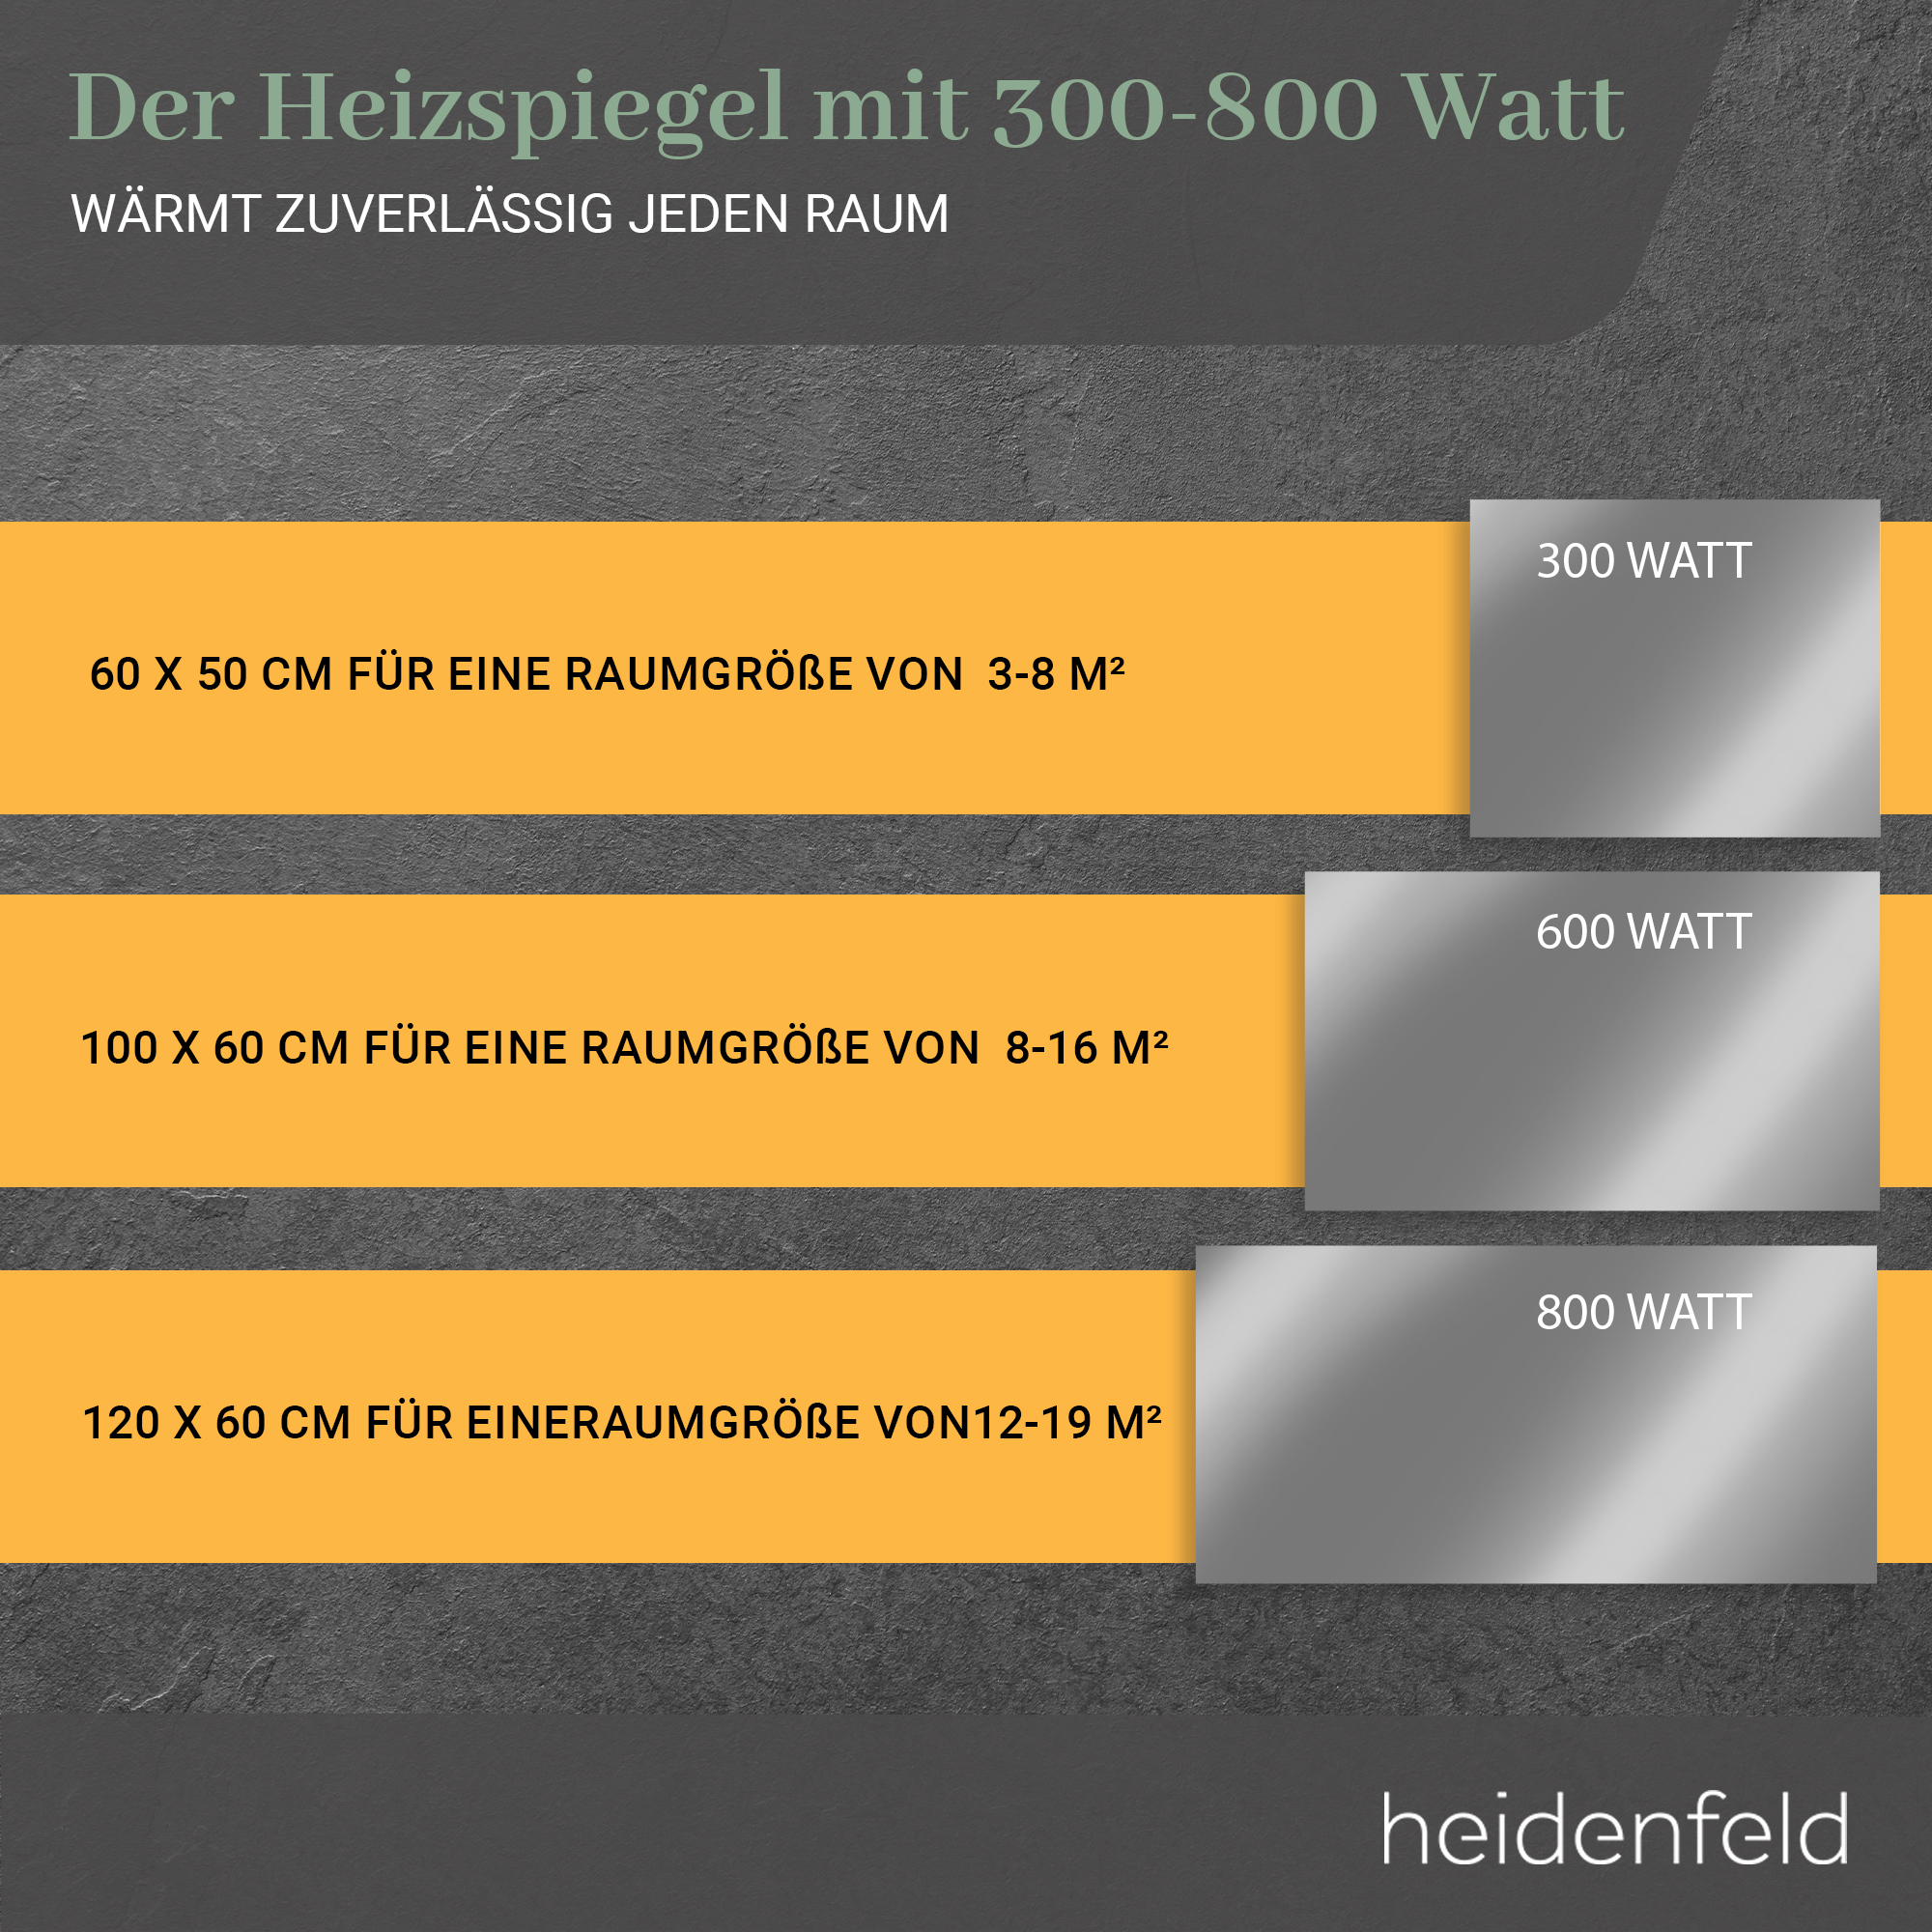 HEIDENFELD HF-HS100 Heizspiegel Watt) (800